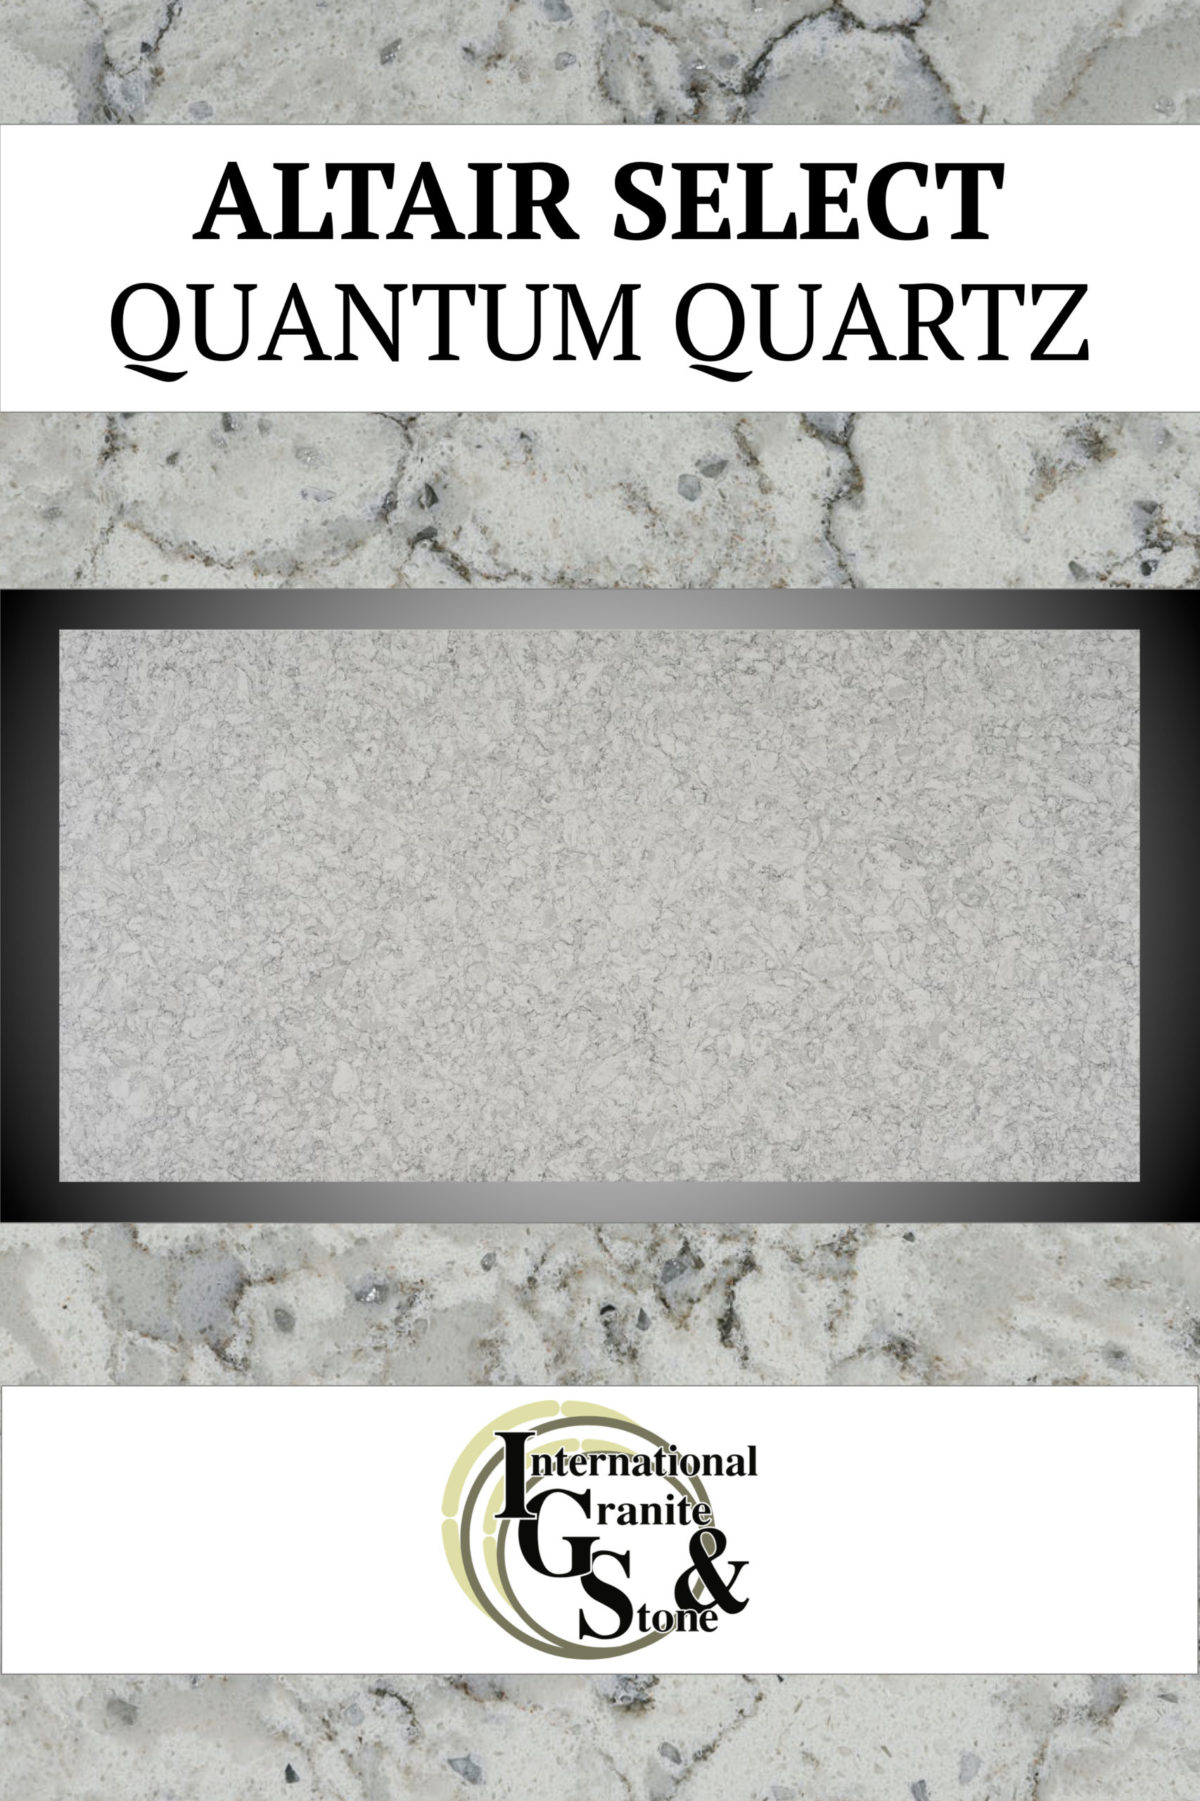 Altair Select Quantum Quartz Countertops